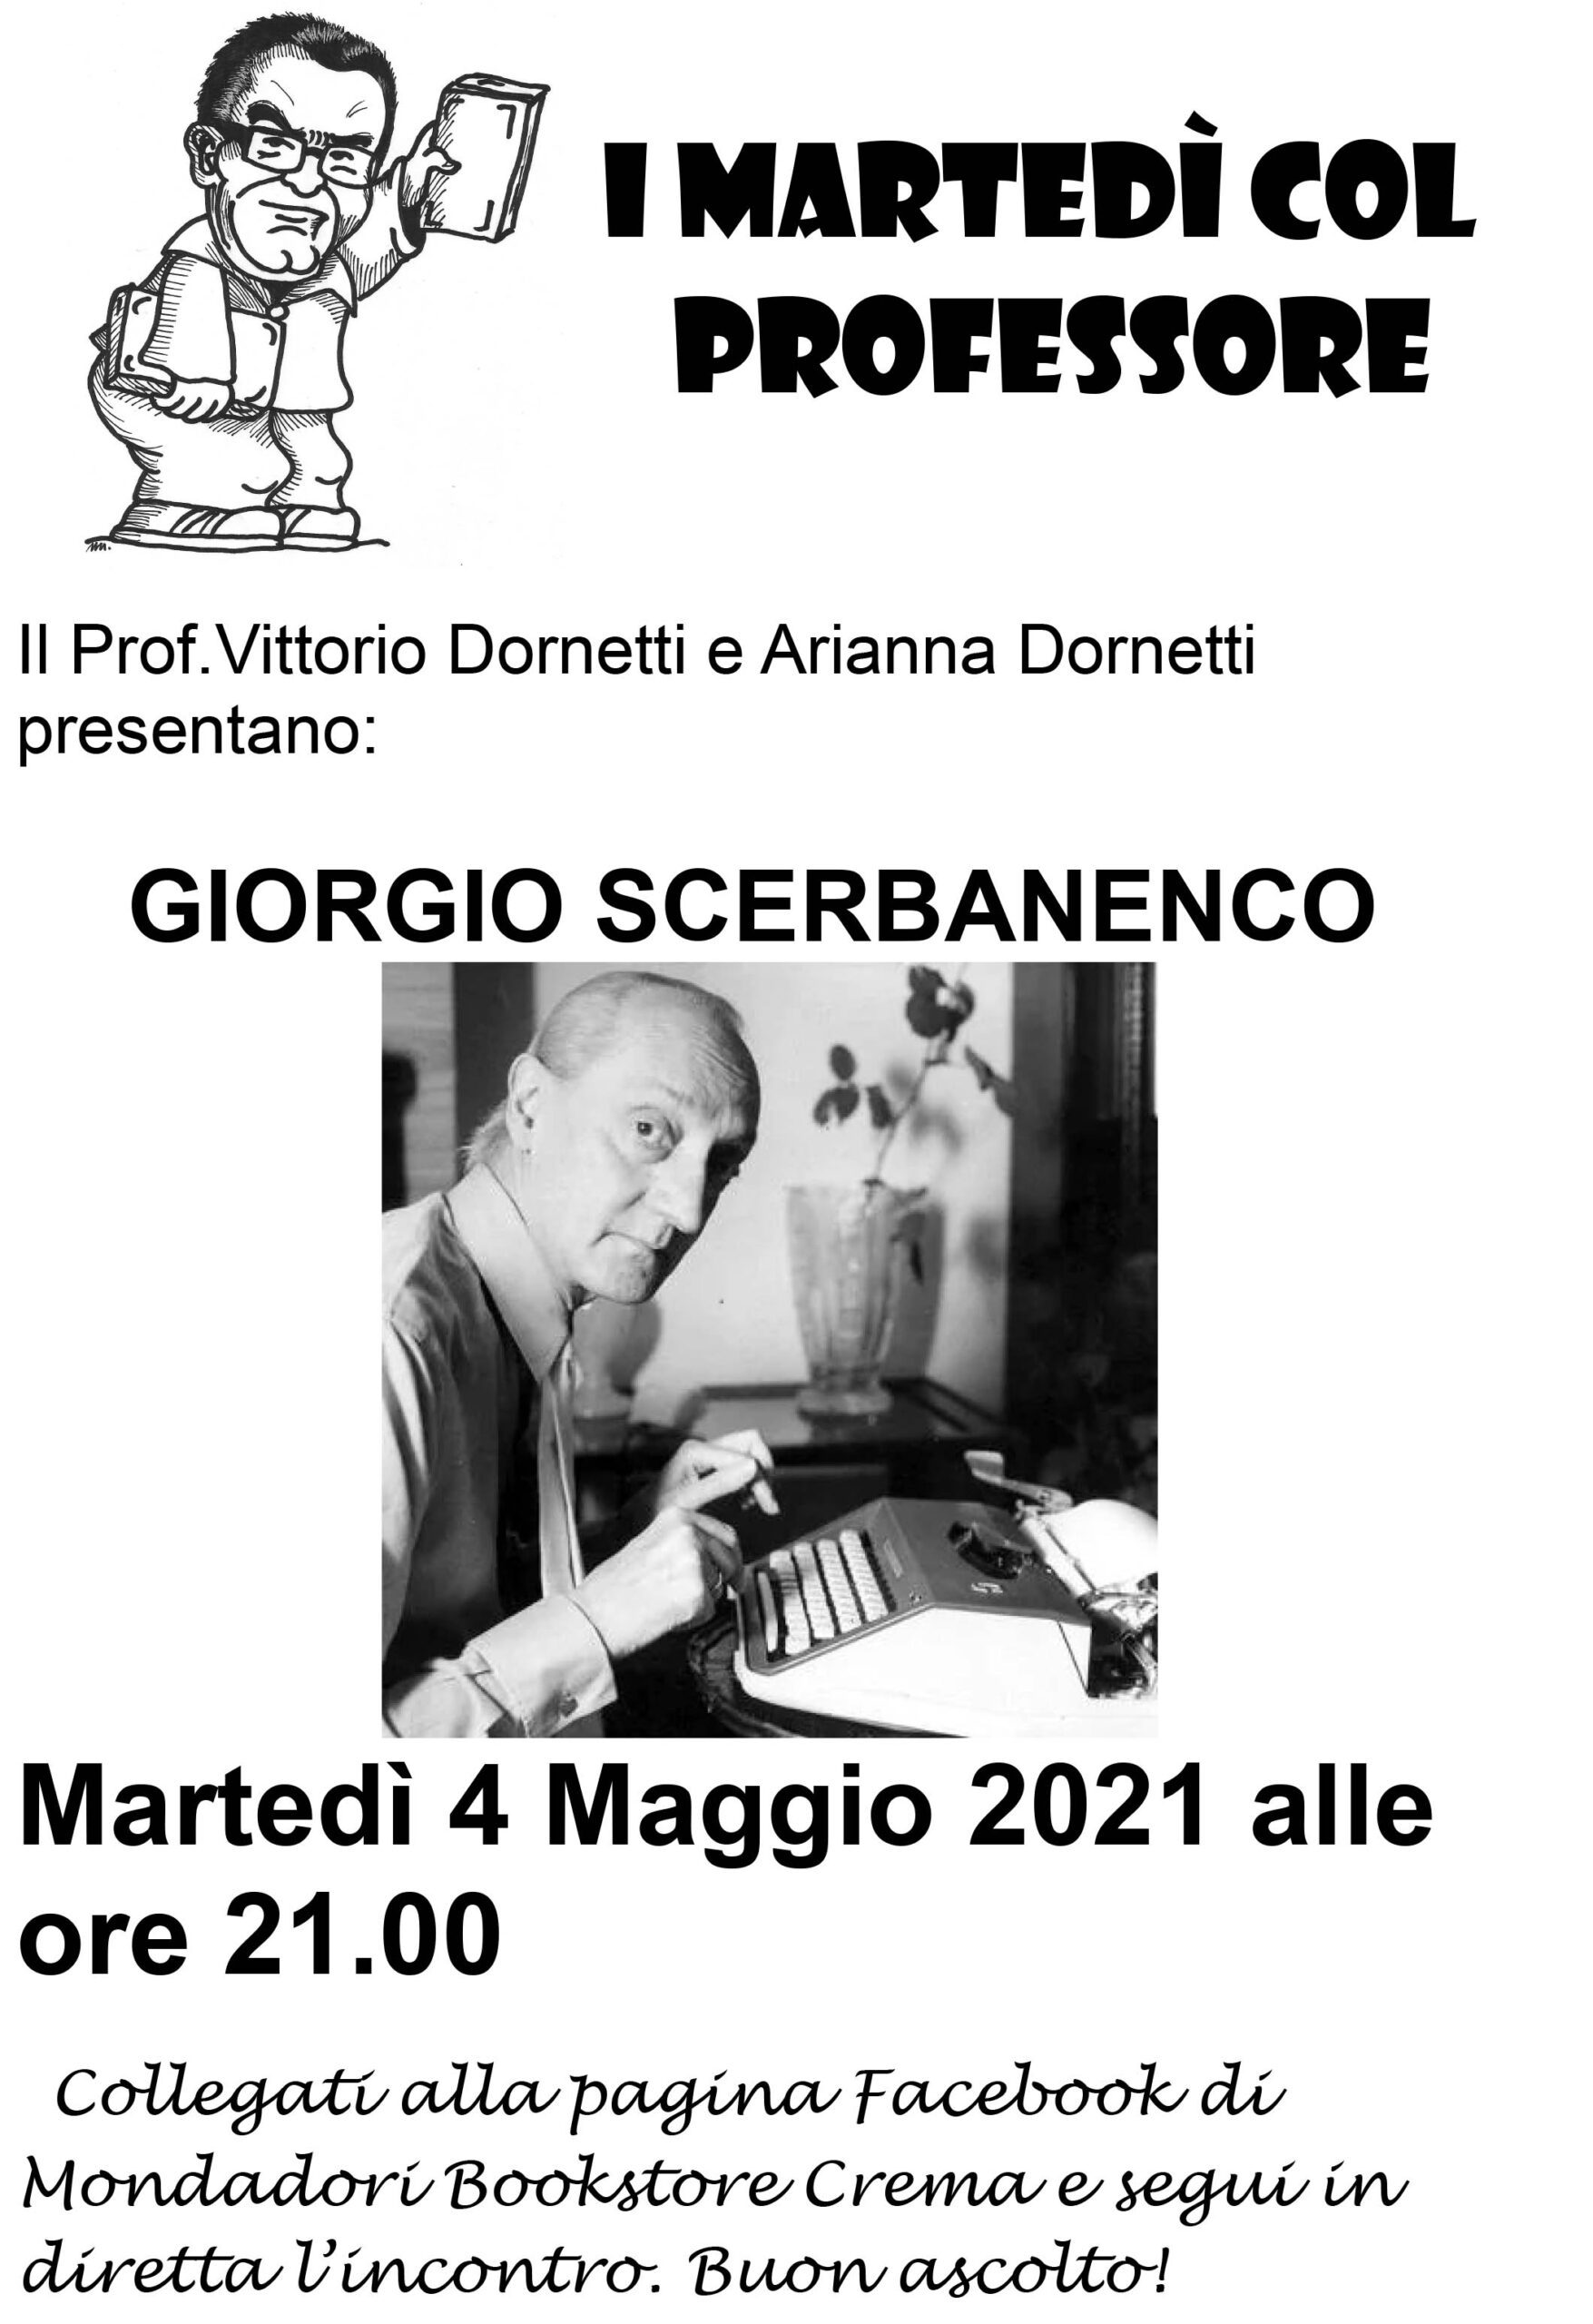 Il professor Dornetti parla di Scerbanenco sulla pagina Fb di Mondadori bookstore